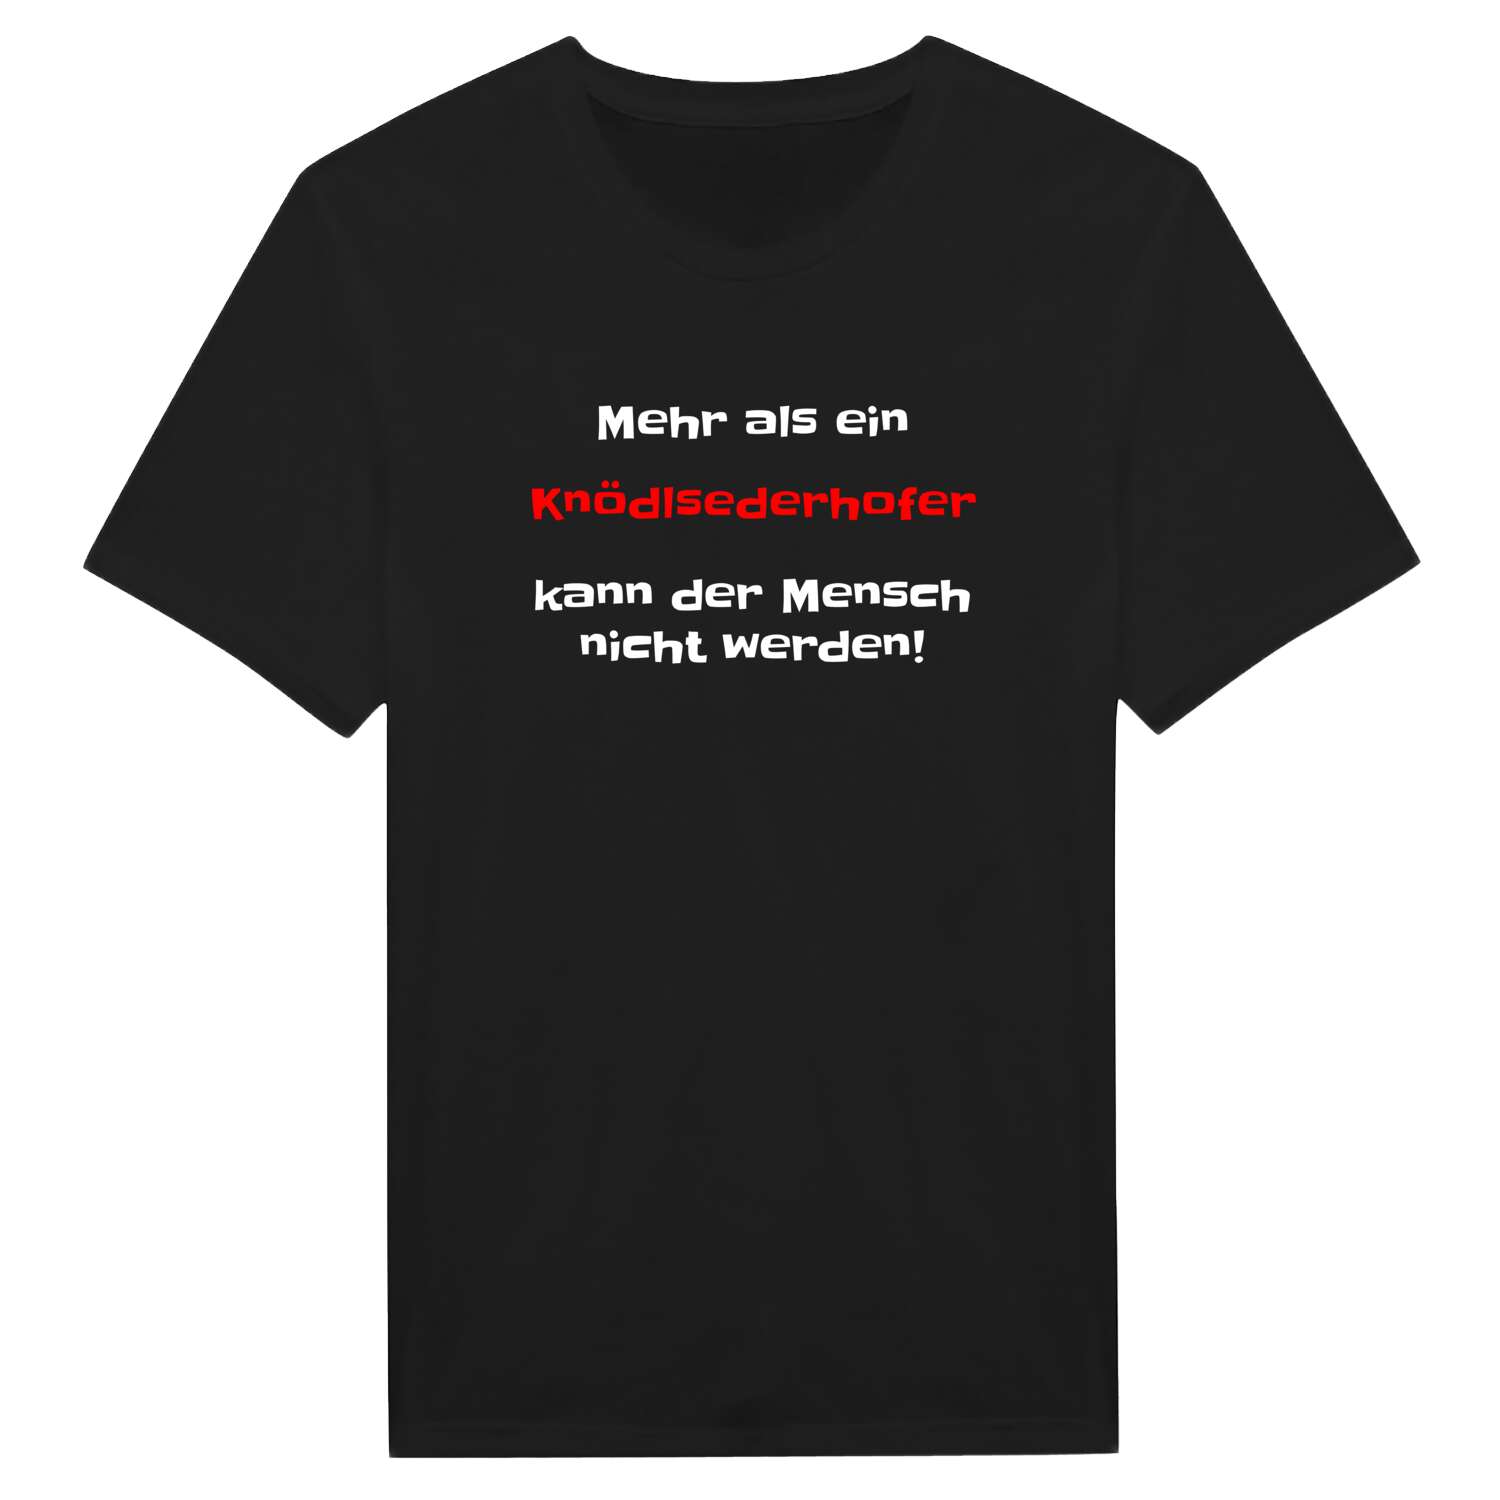 Knödlsederhof T-Shirt »Mehr als ein«